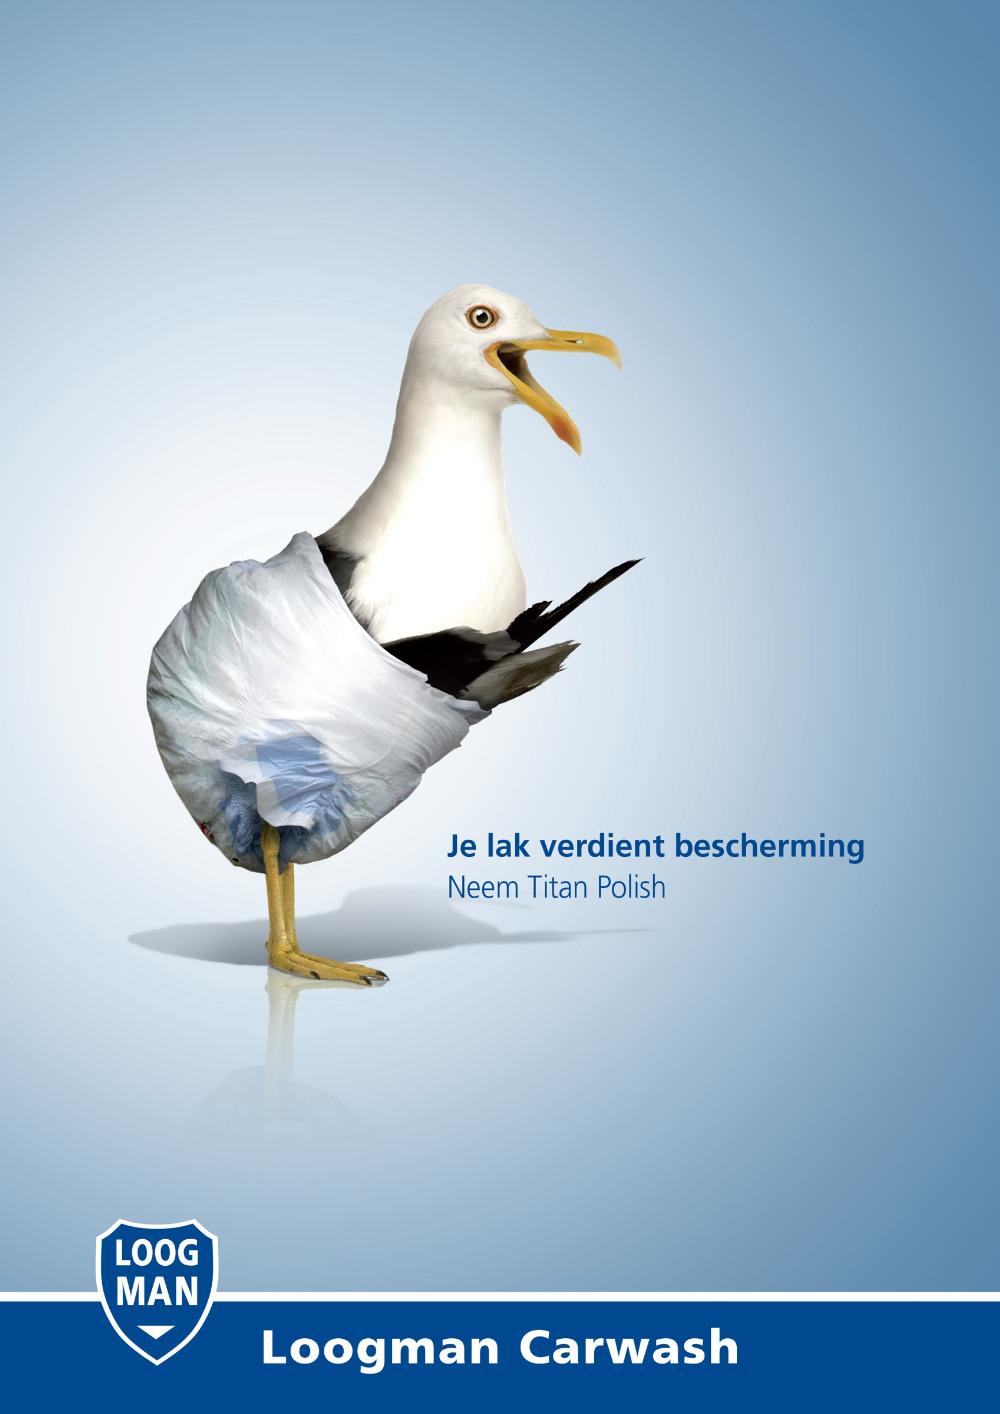 荷兰洗车行平面广告设计